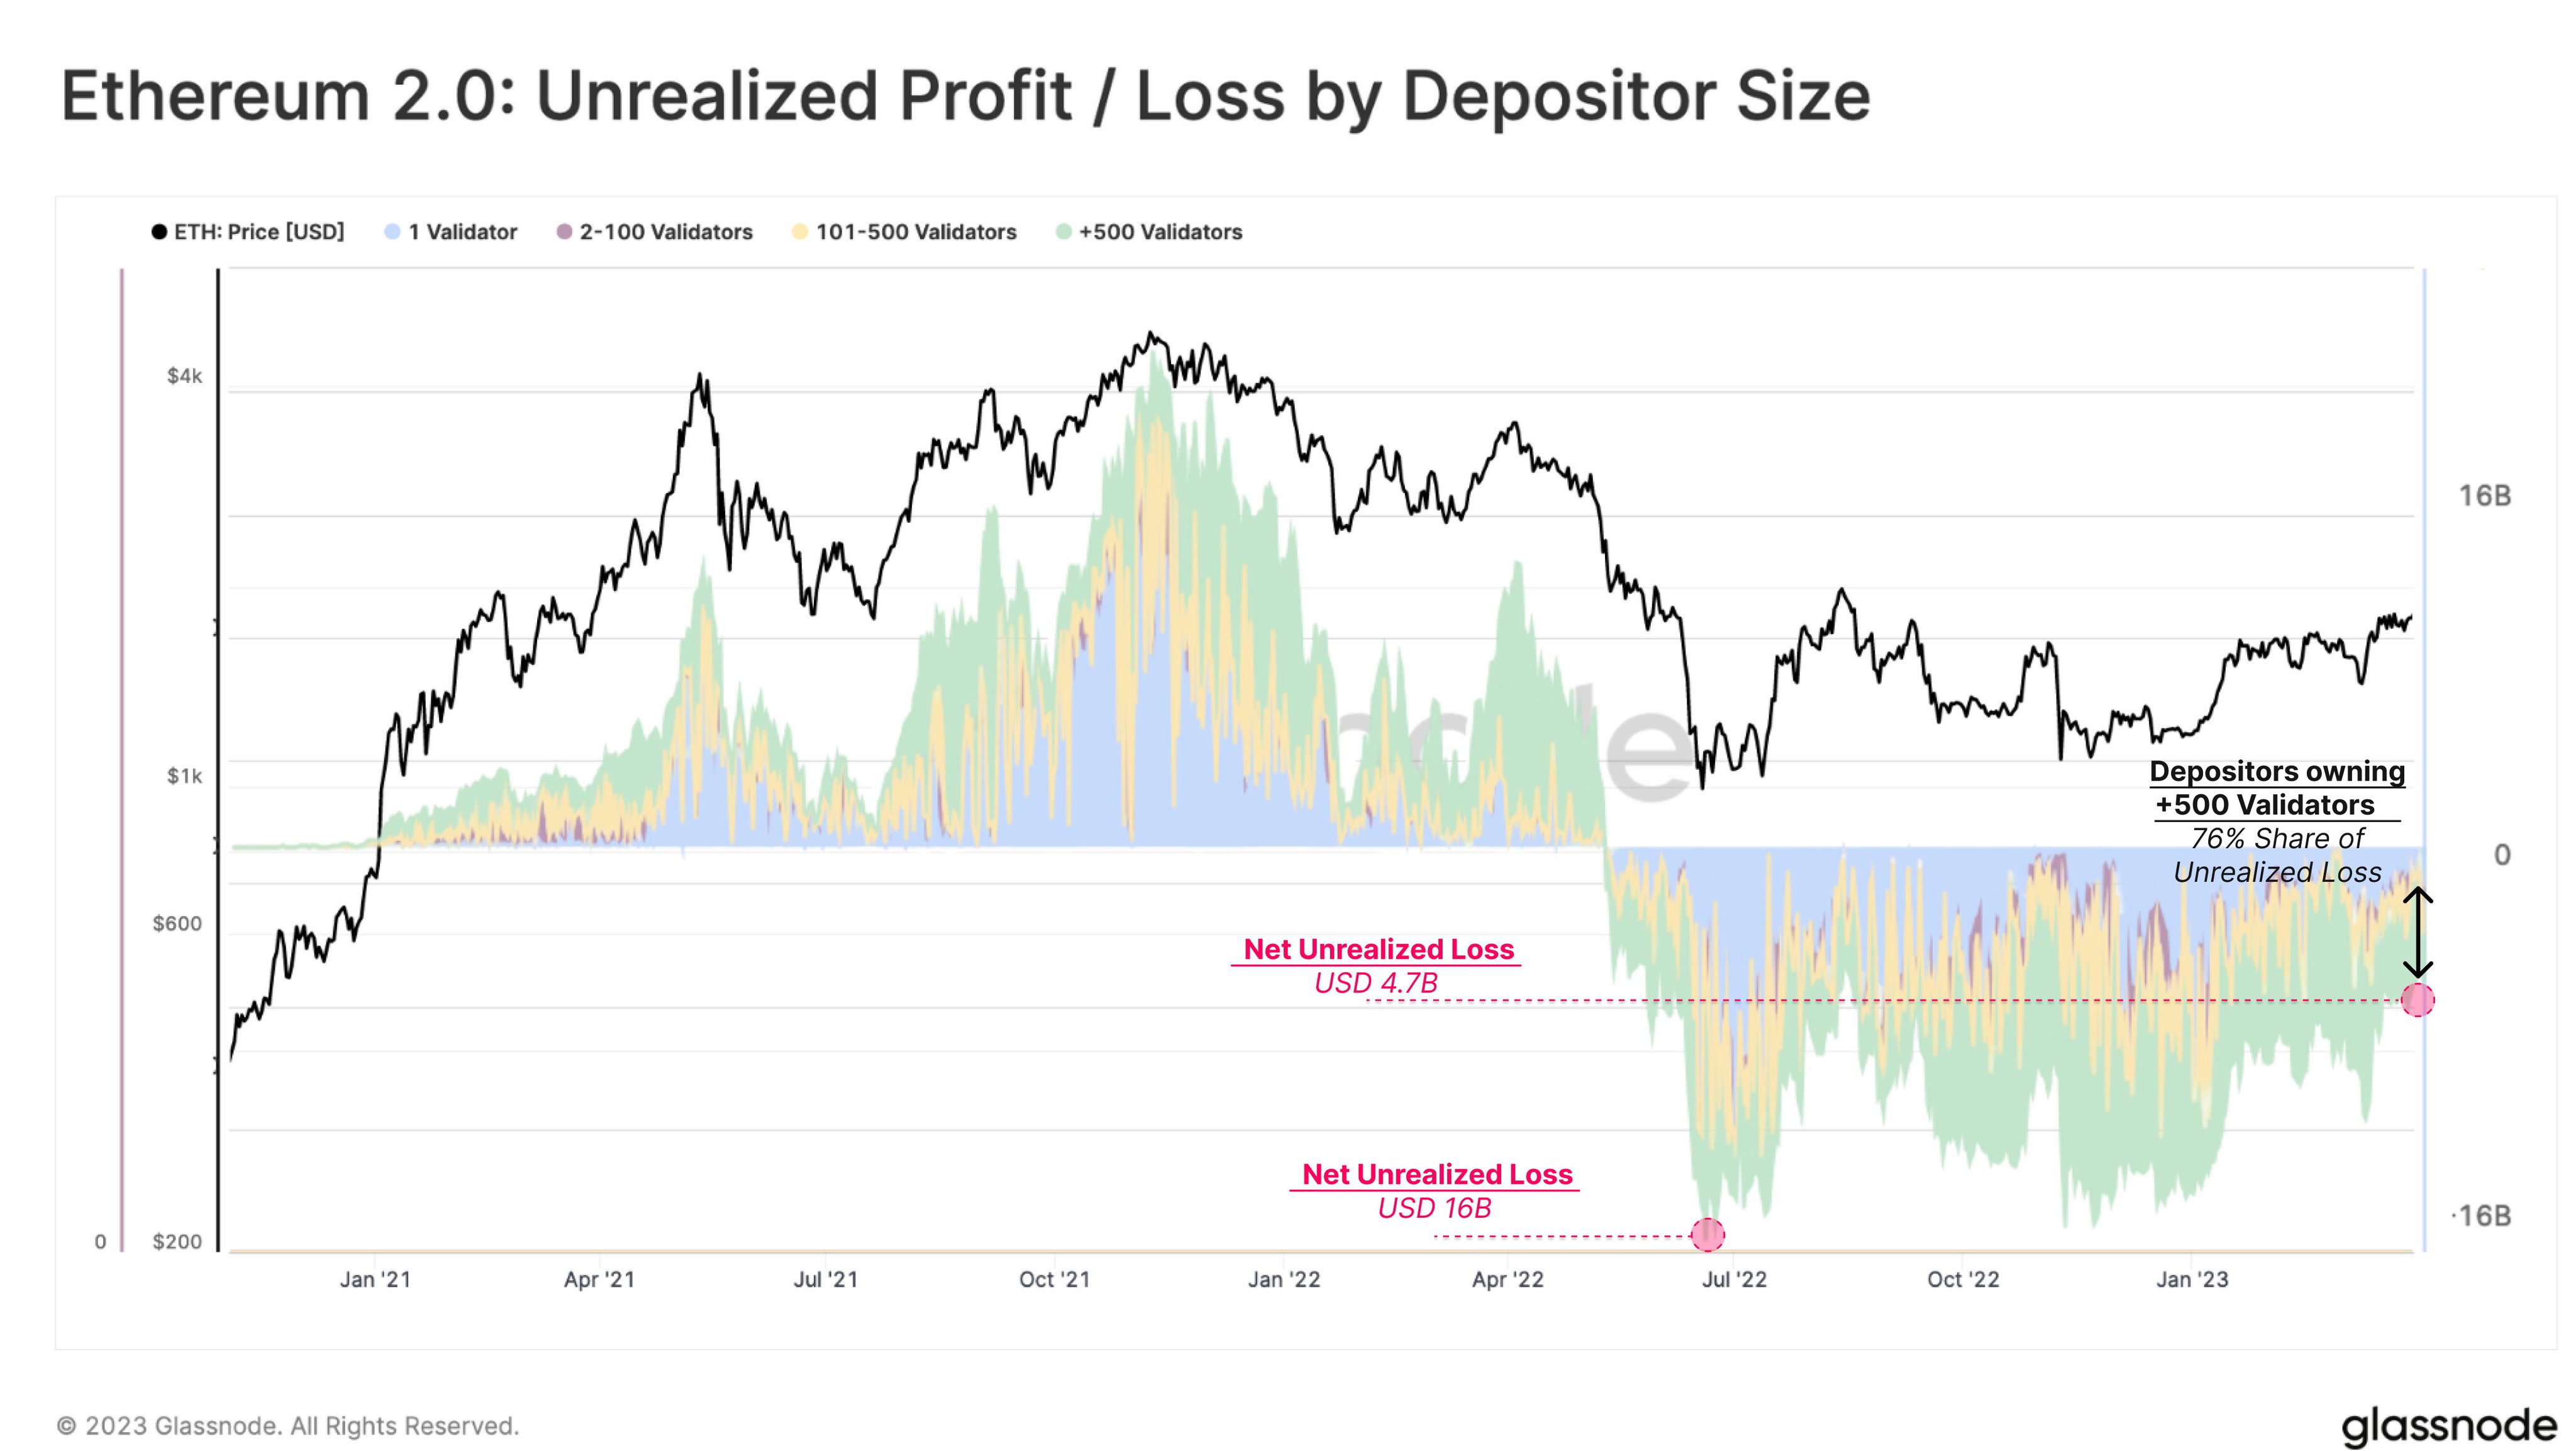 Ethereum Unrealized Profit/Loss